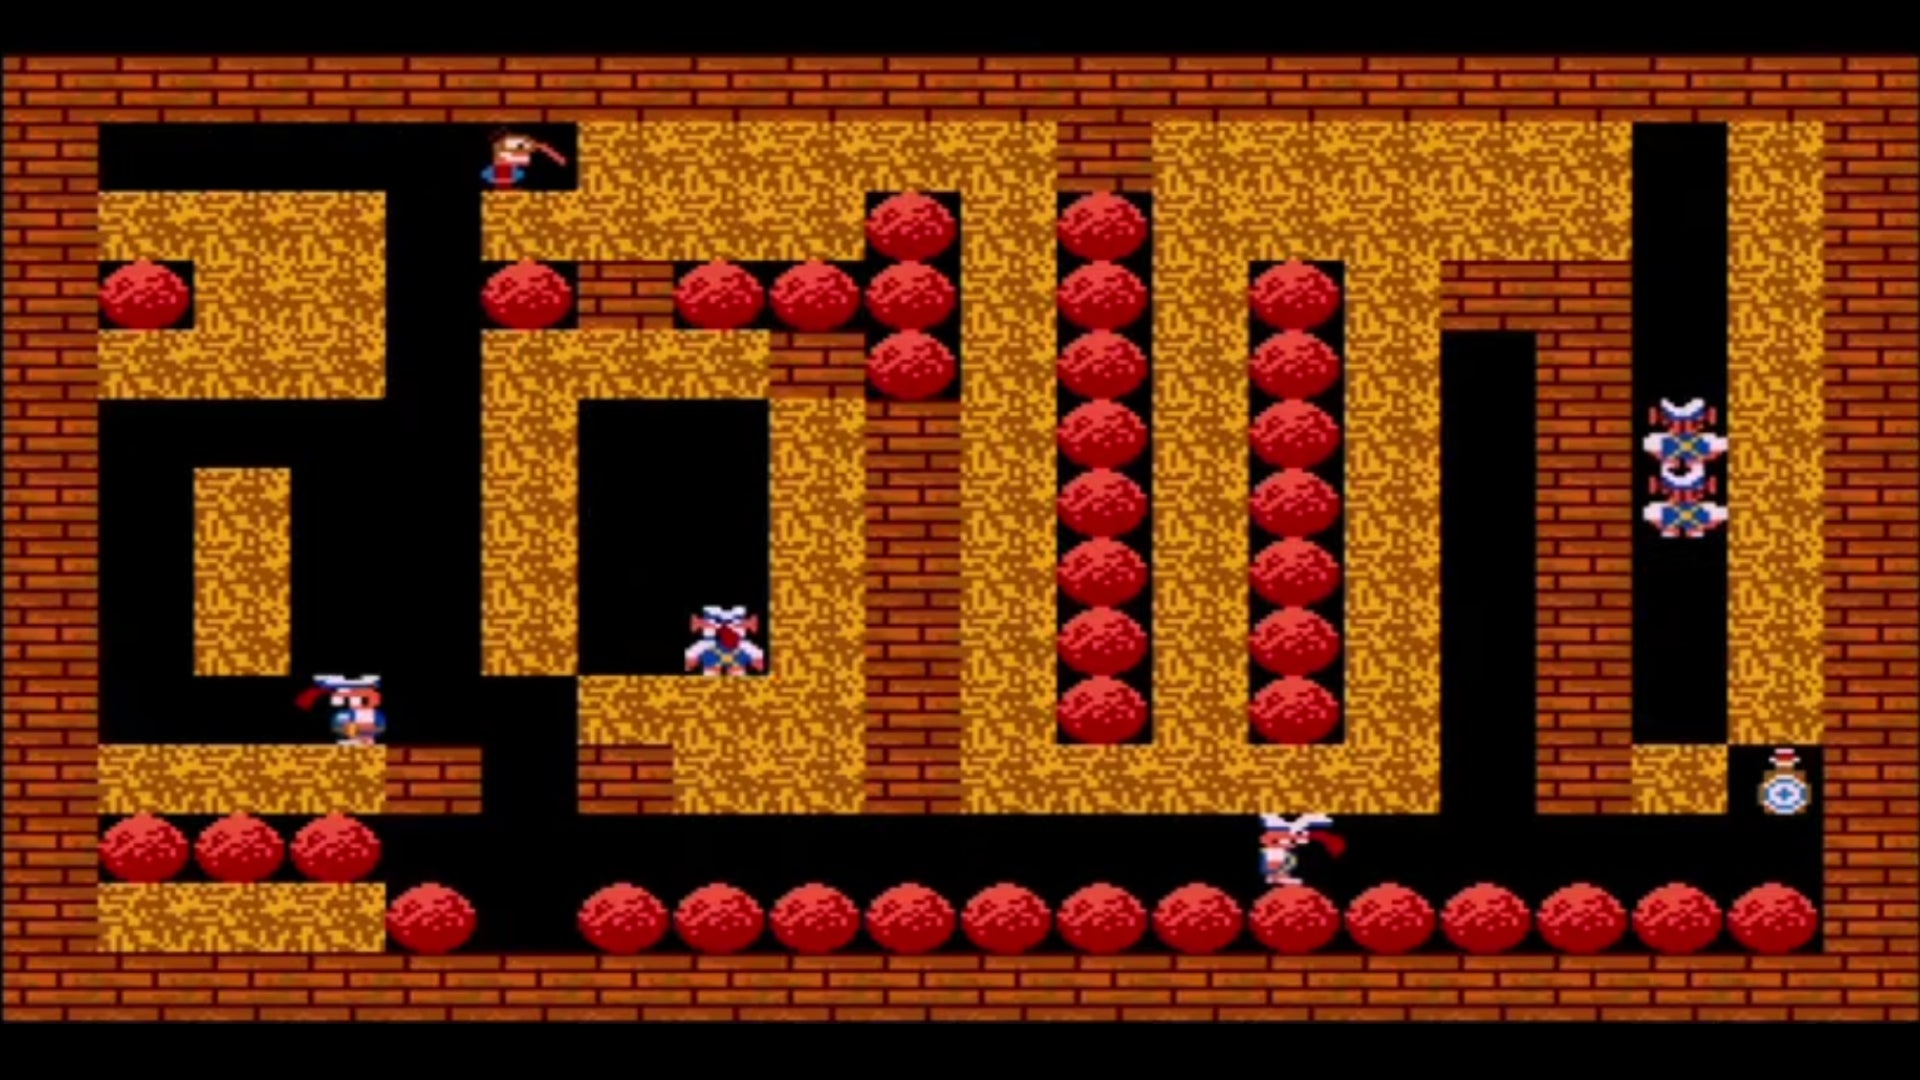 A screenshot from Flaschbier, a 2D platformer on the Amiga.